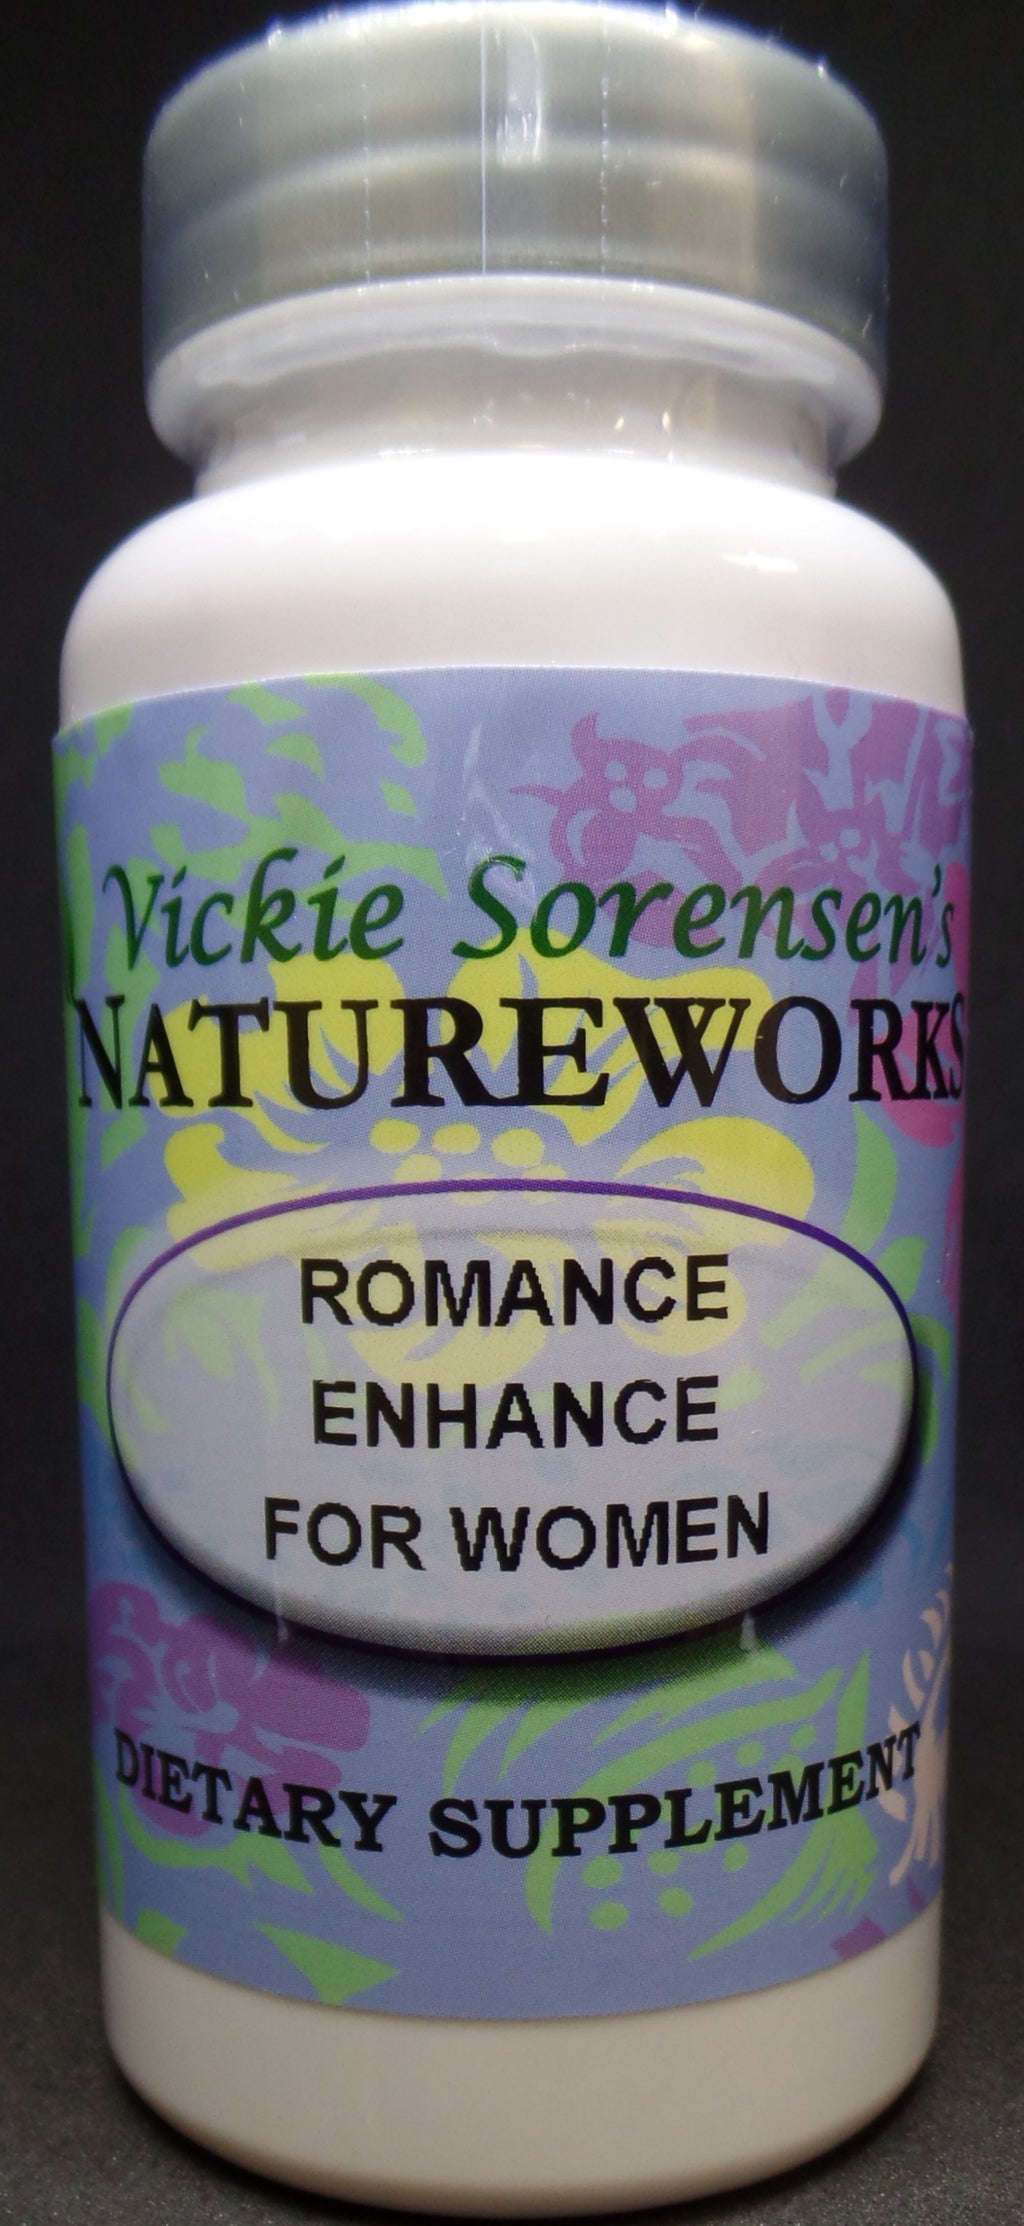 Romance Enhance For Women